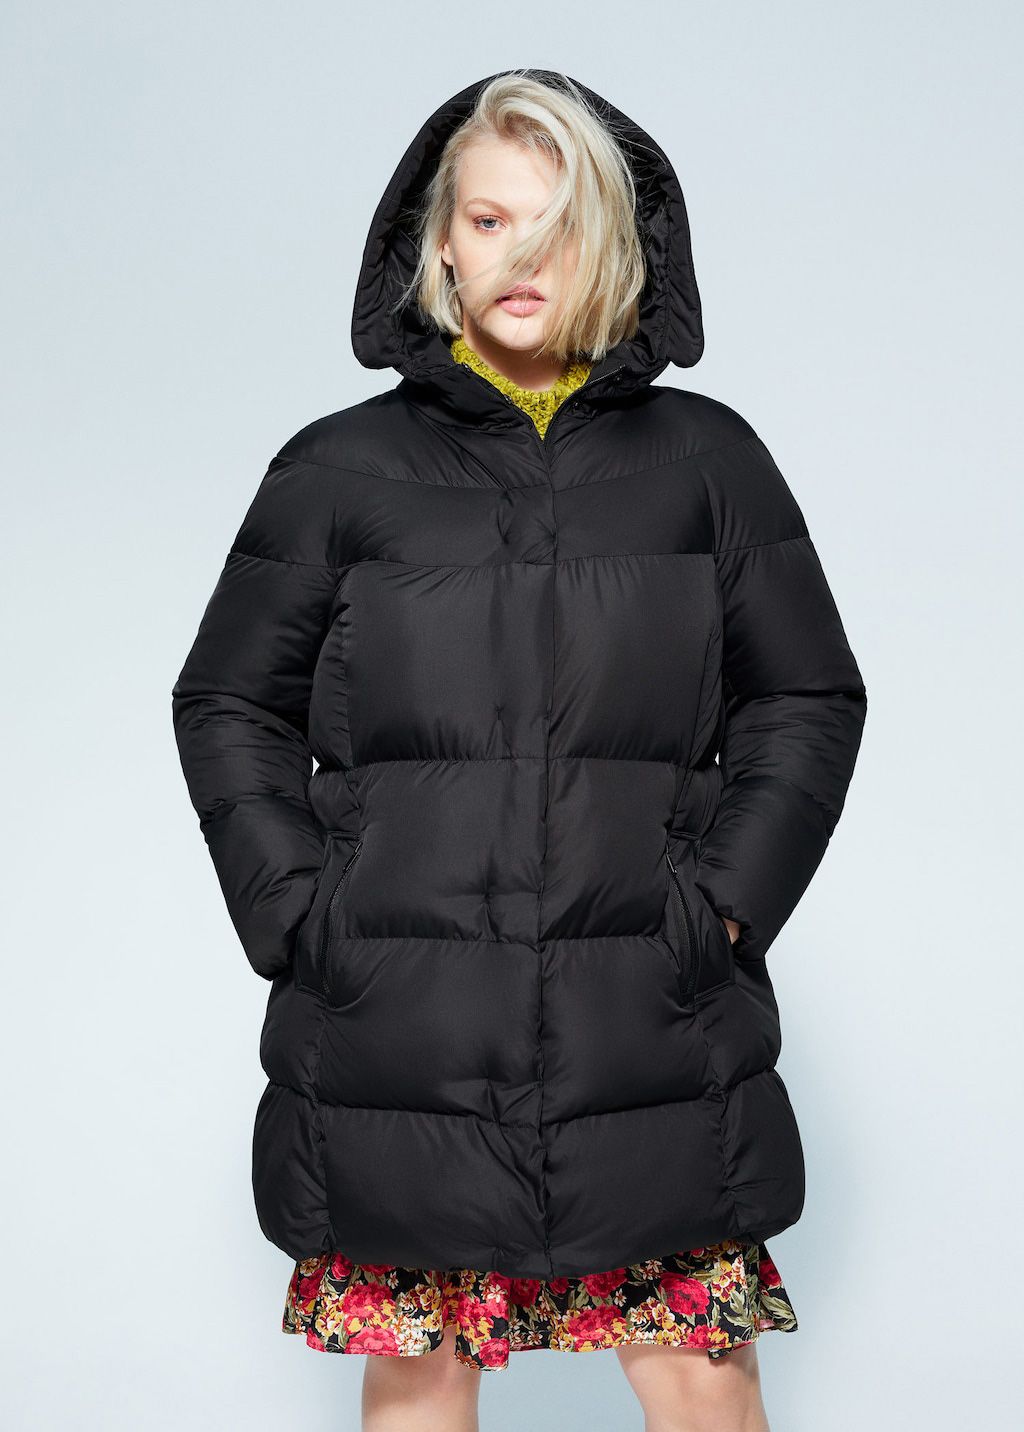 Plus Size Women Fleece Lined Hoodies Coat Sweatshirt Parka Outwear Jacket Winter 